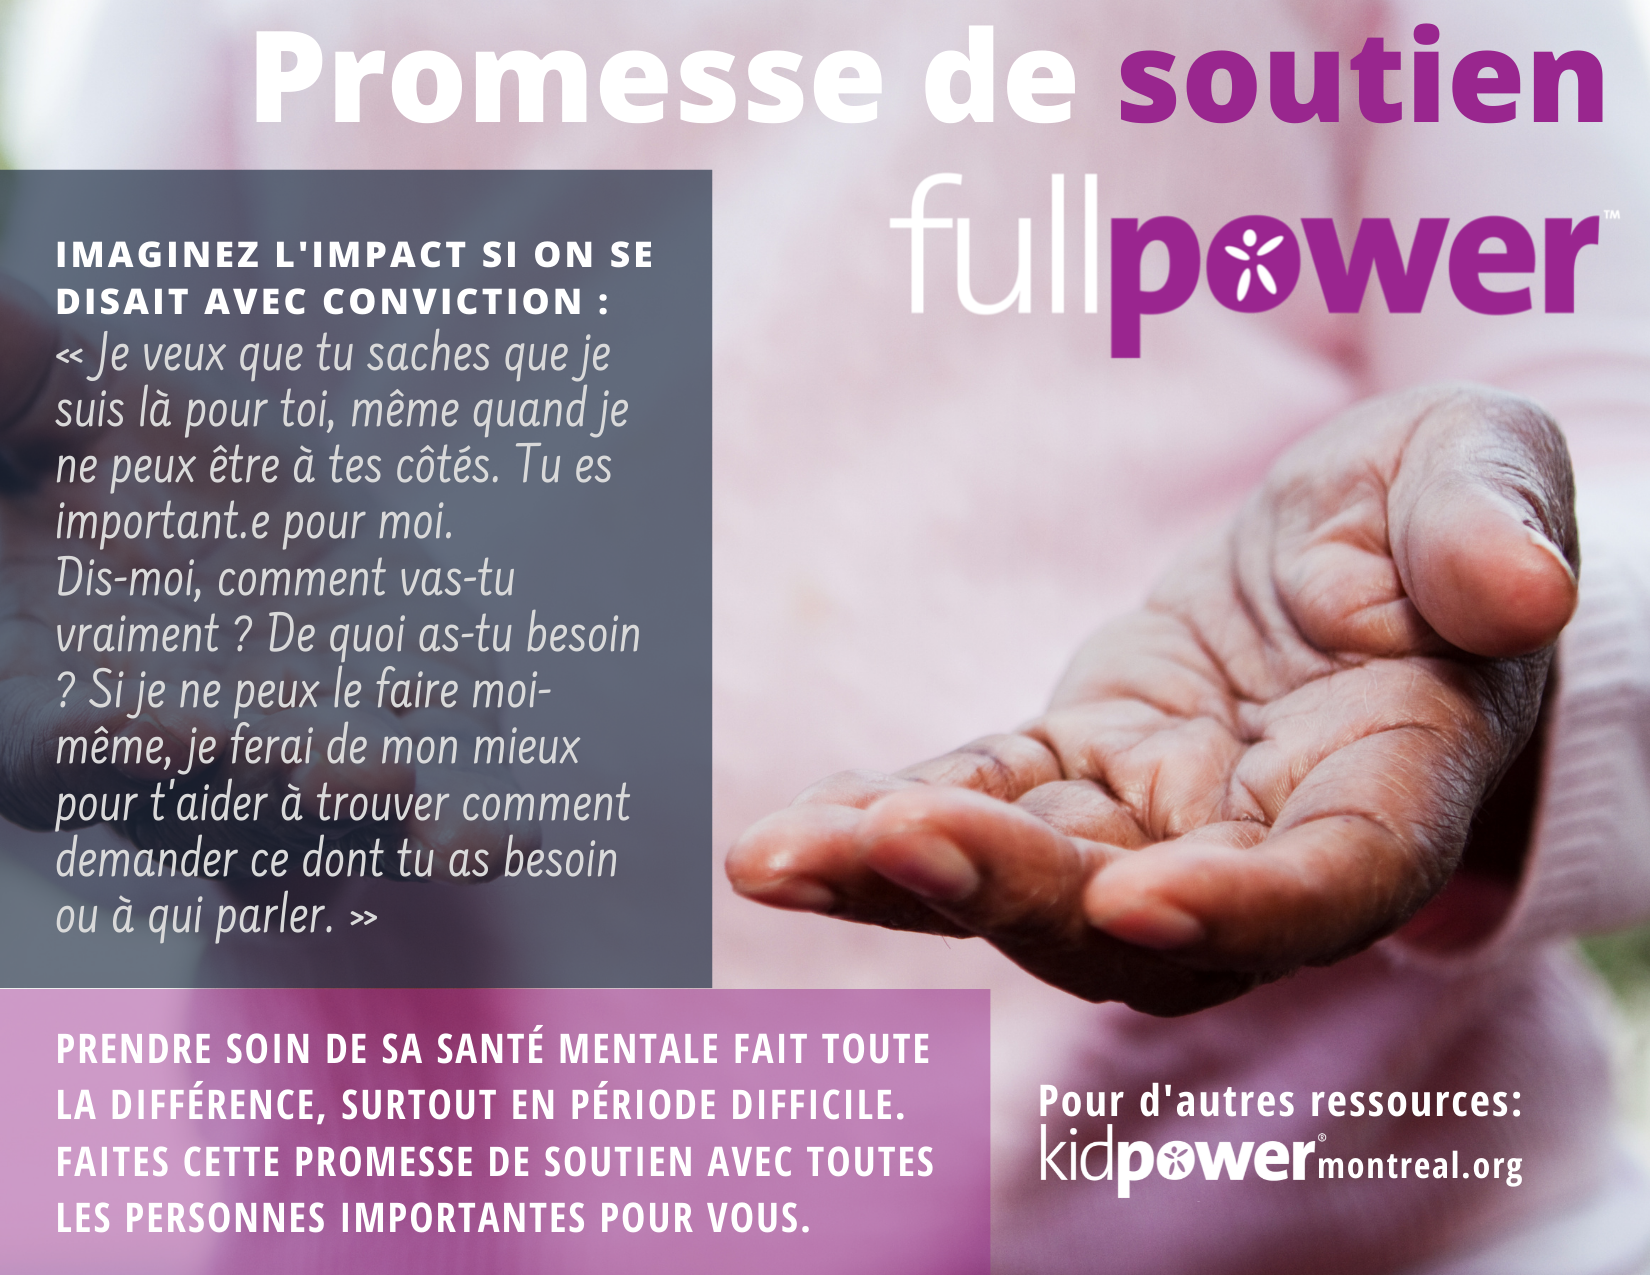 Affiche : Promesse de soutien Fullpower